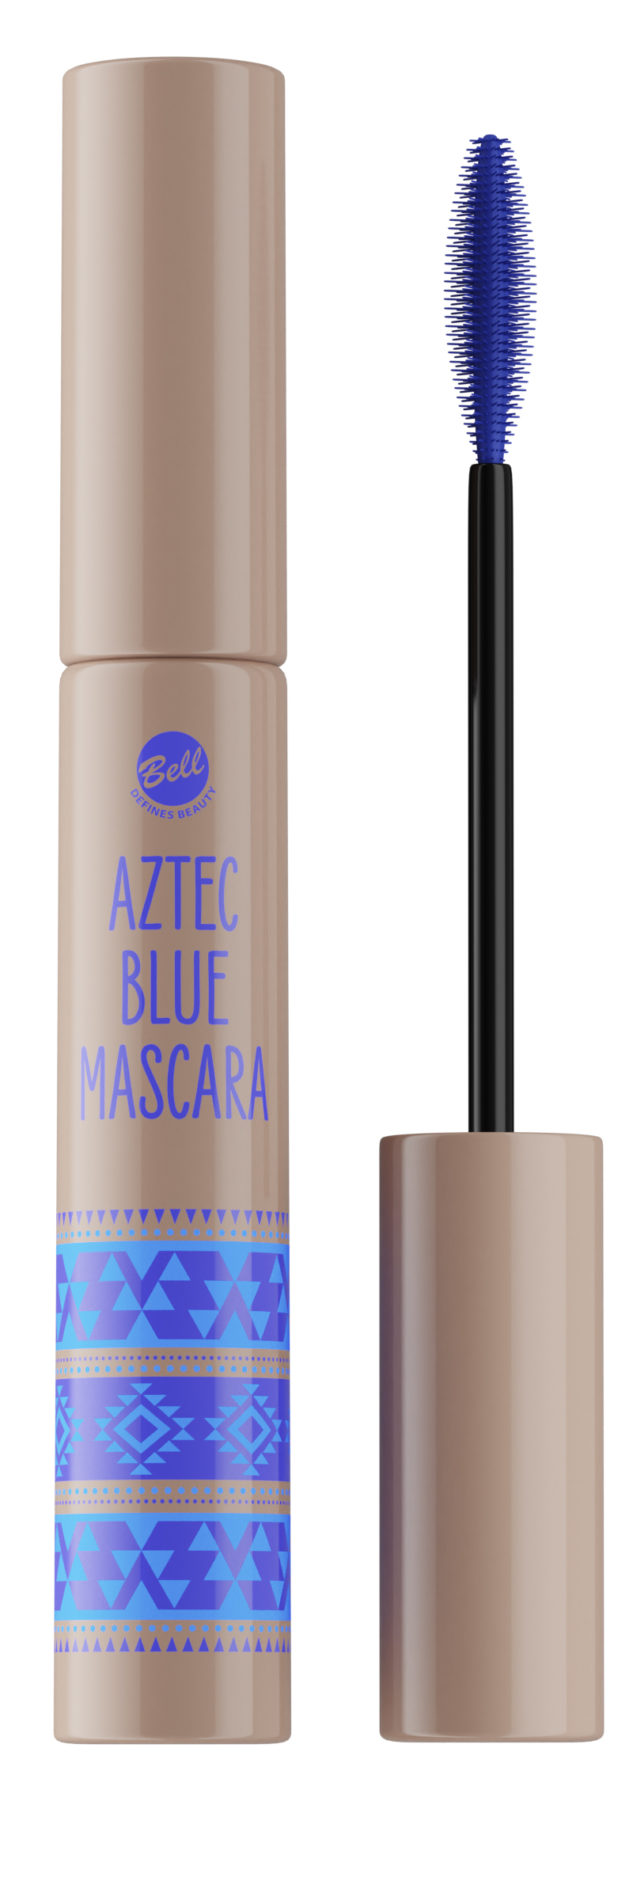 Aztec Blue Mascara